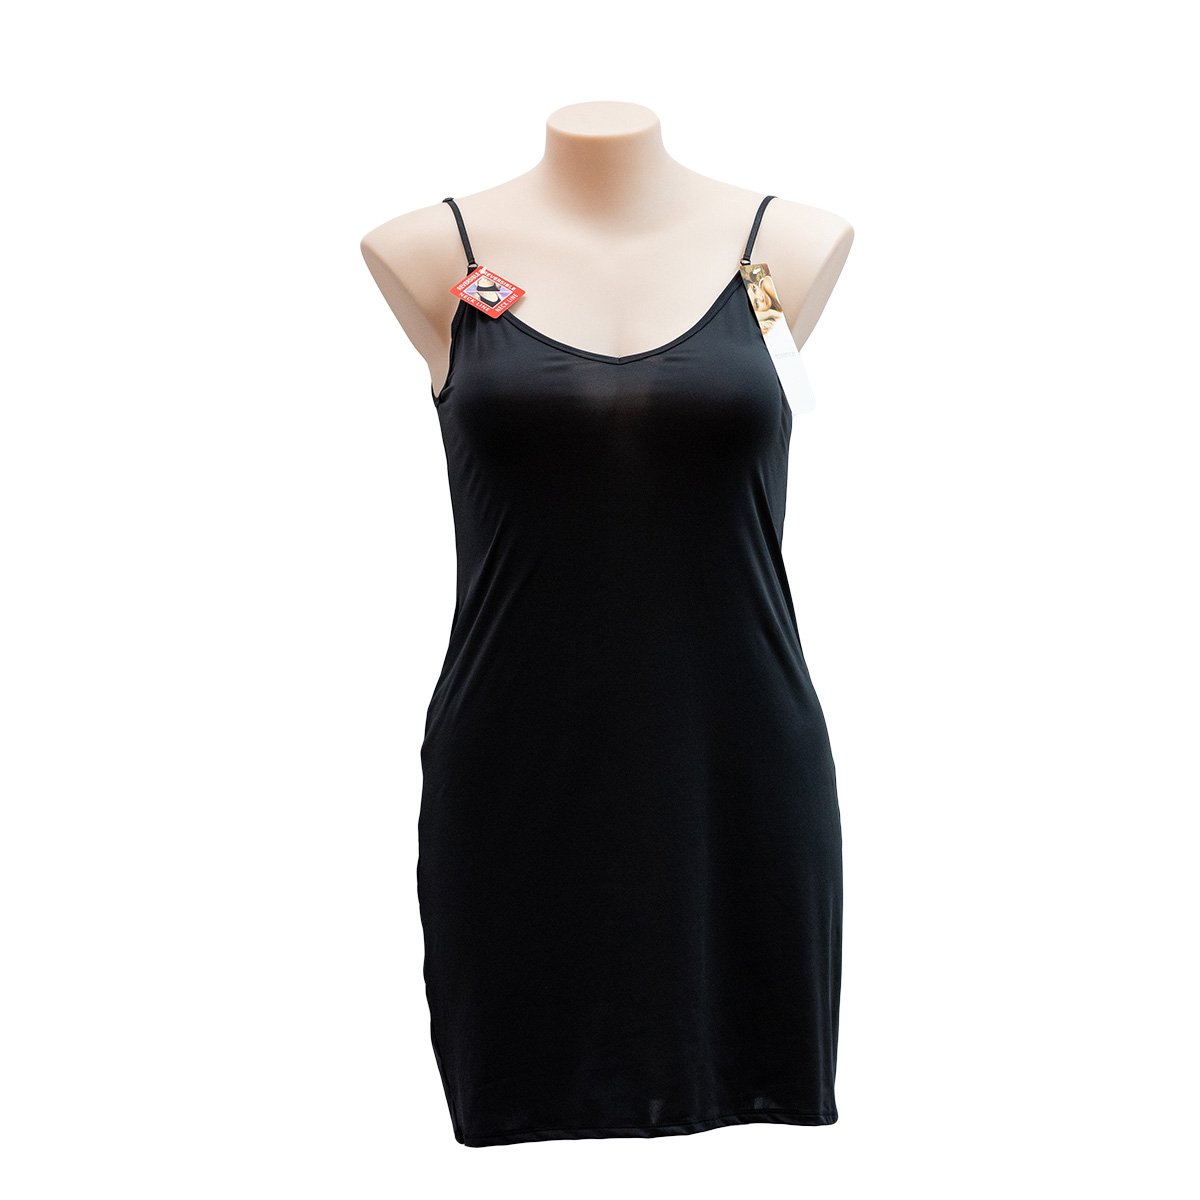 Essence Reversible Shoestring Full Slip 976SL - Dresses & Slips Black / 10 / S  Available at Illusions Lingerie